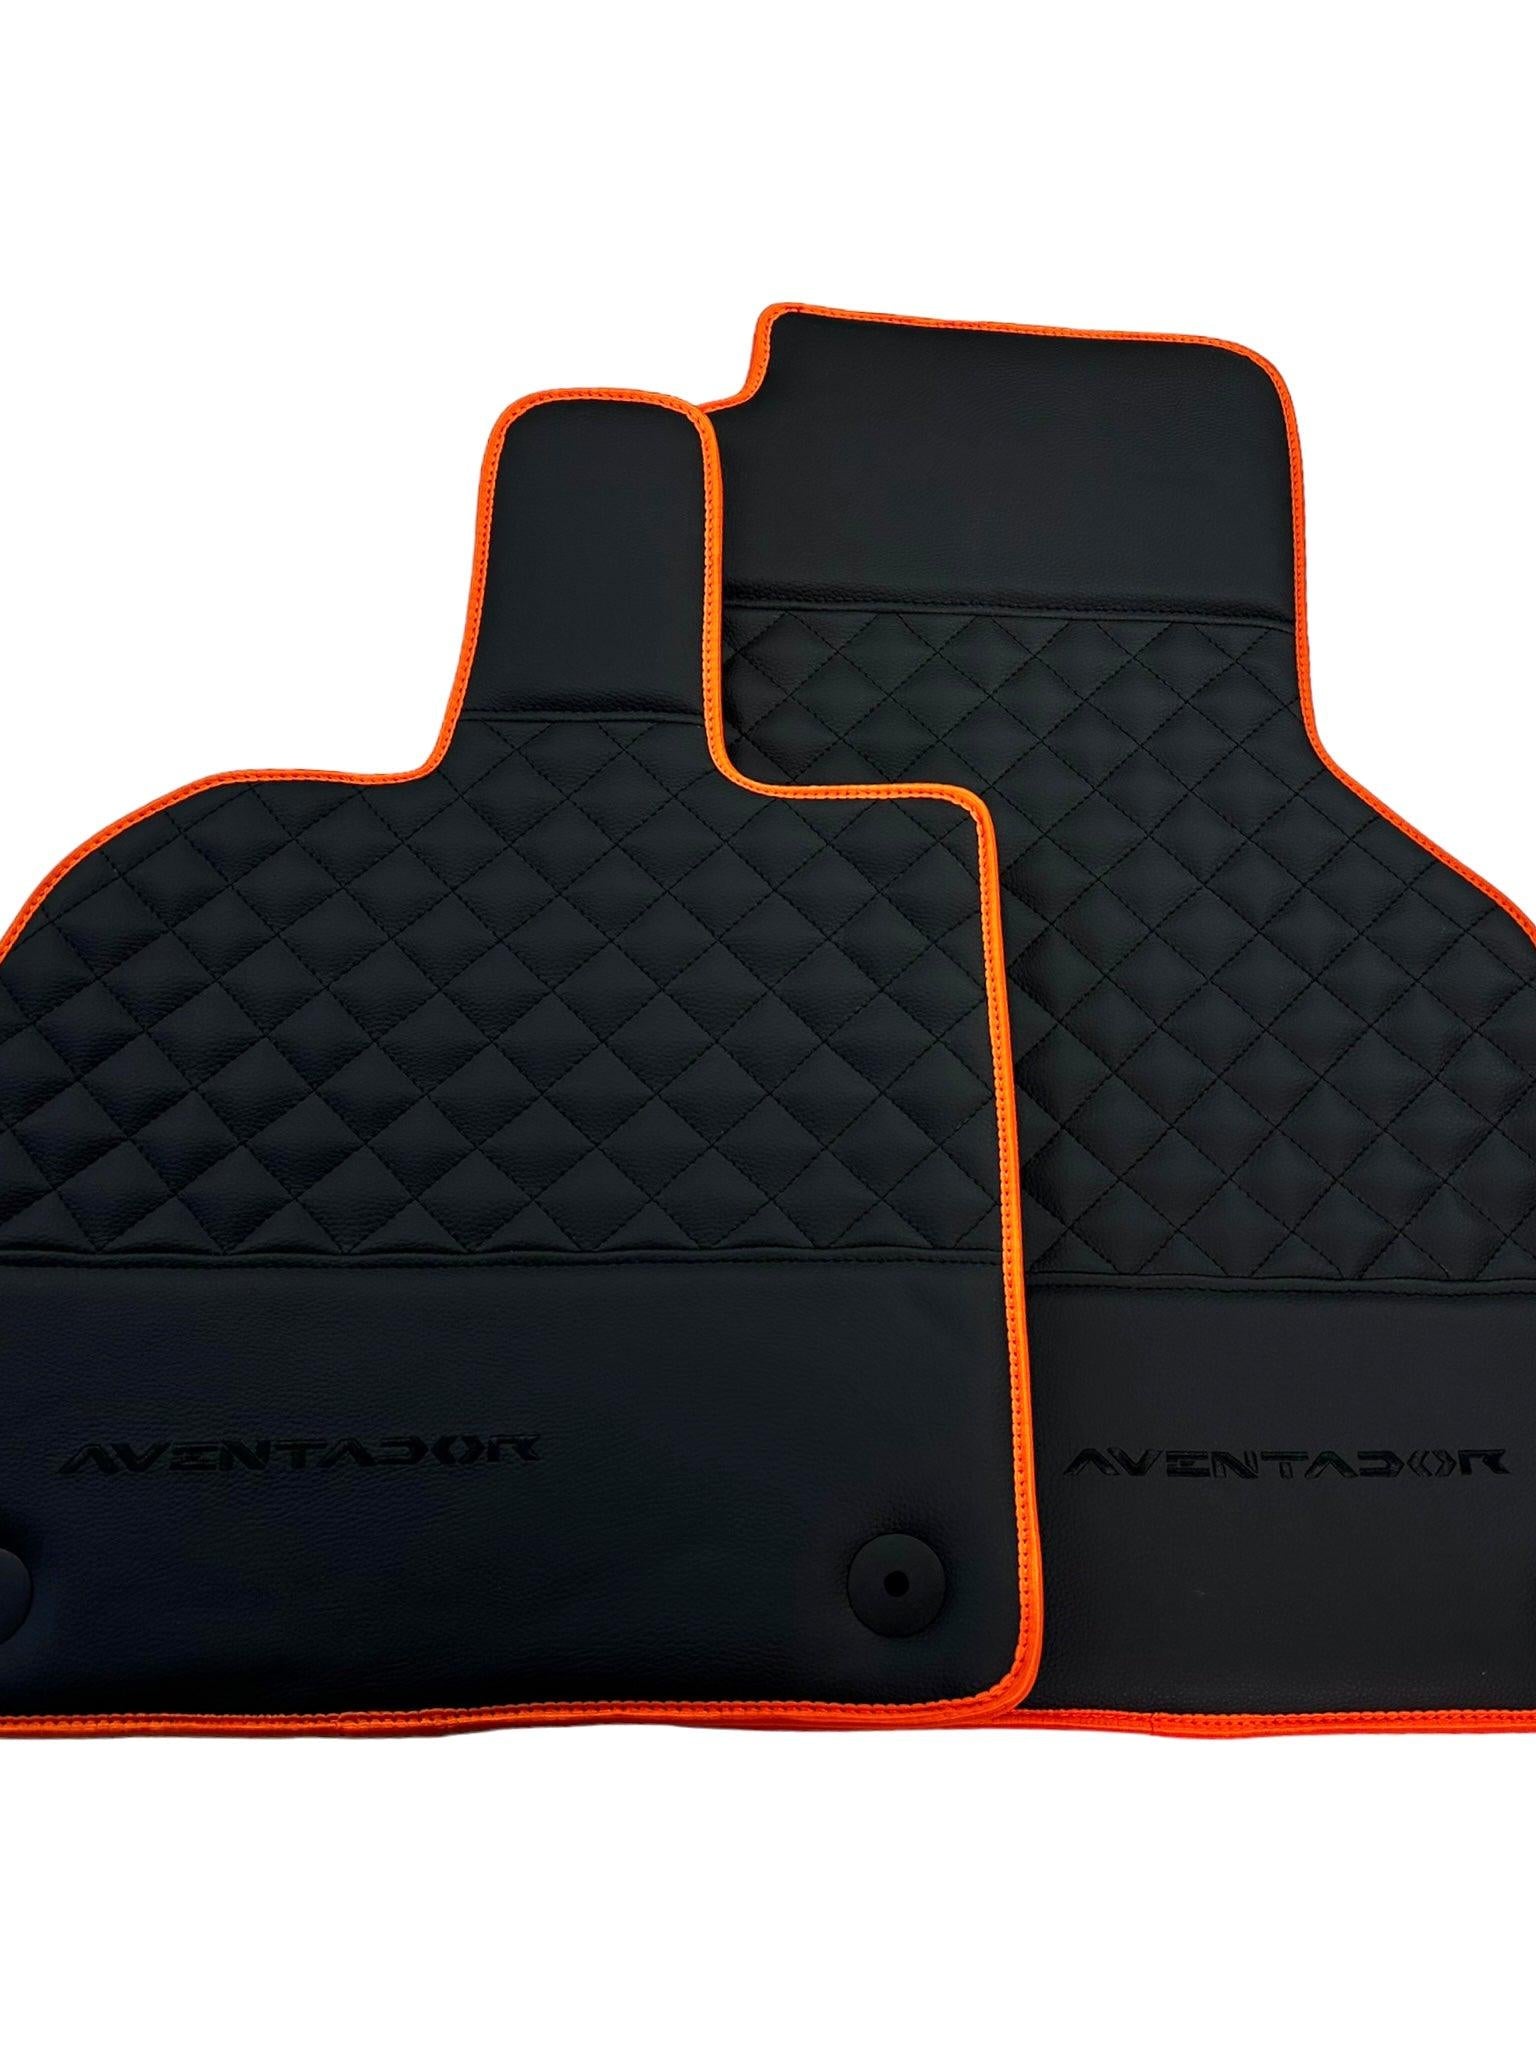 Black Leather Floor Mats For Lamborghini Aventador with Orange Trim